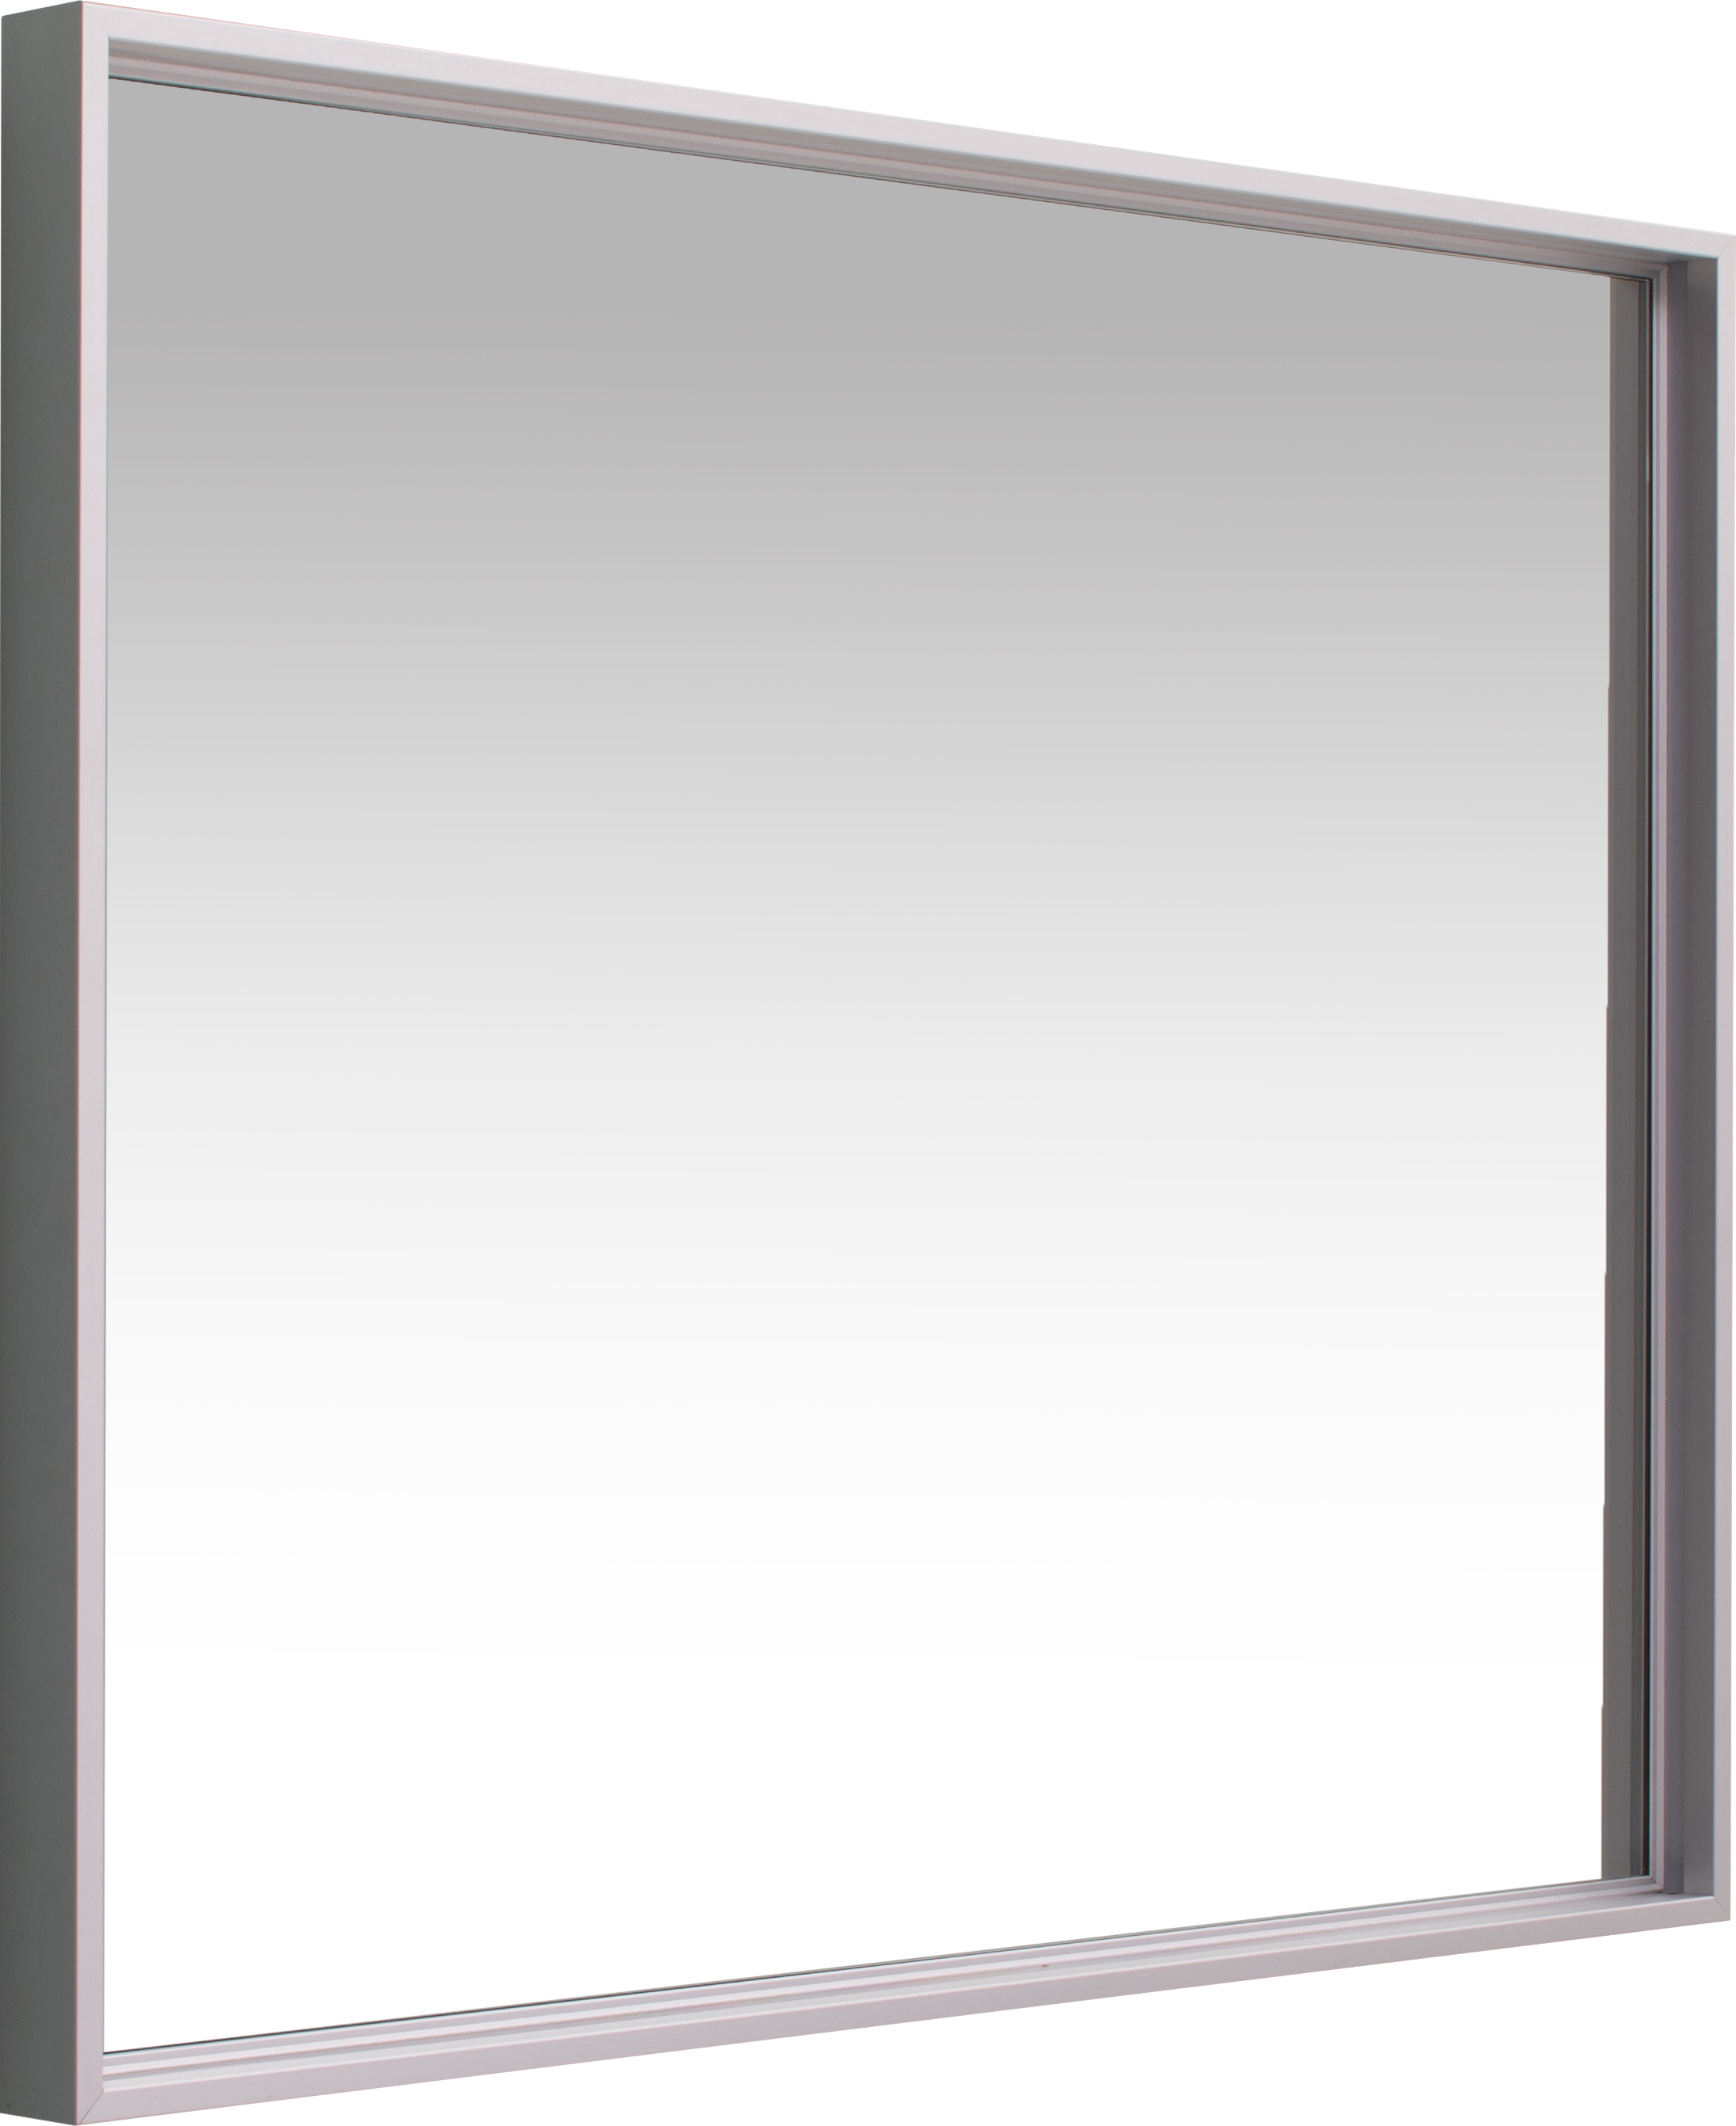 Зеркало De Aqua Алюминиум 9075 с подсветкой, серебро